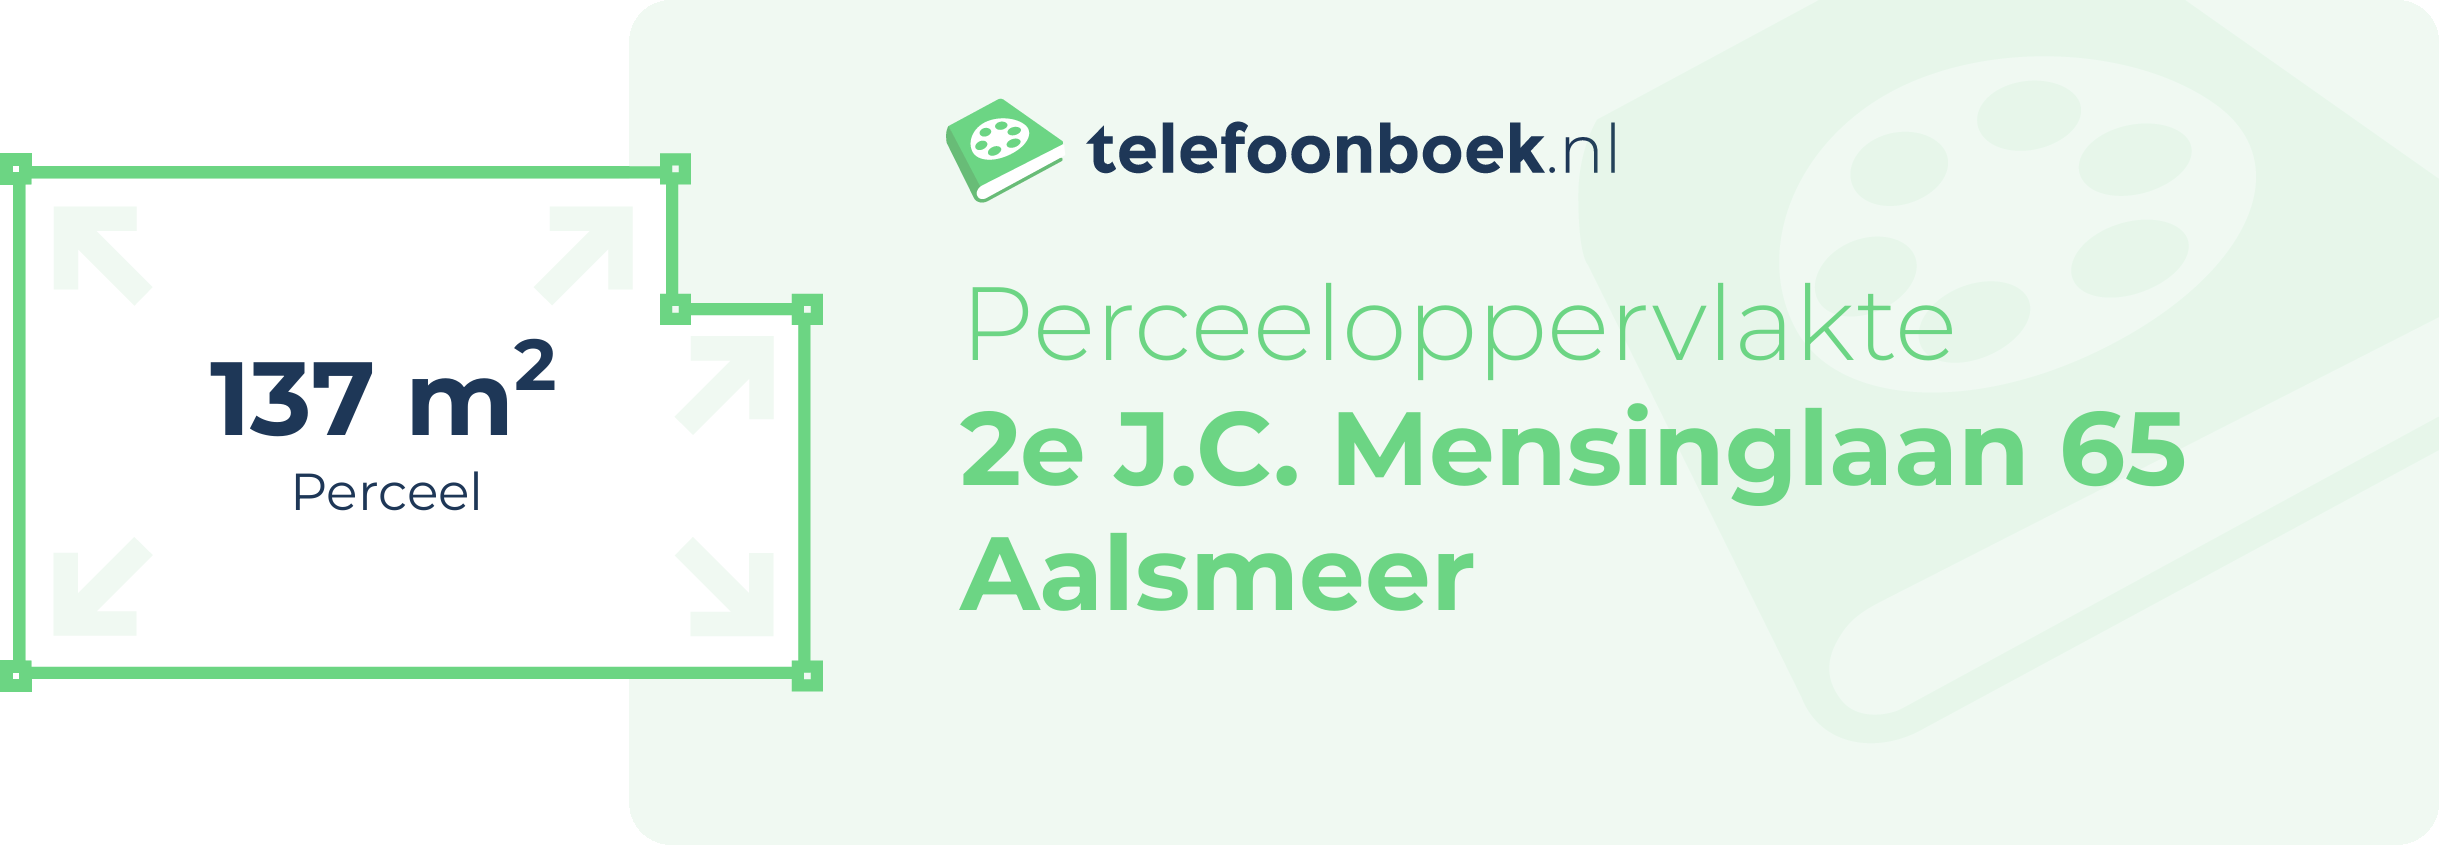 Perceeloppervlakte 2e J.C. Mensinglaan 65 Aalsmeer